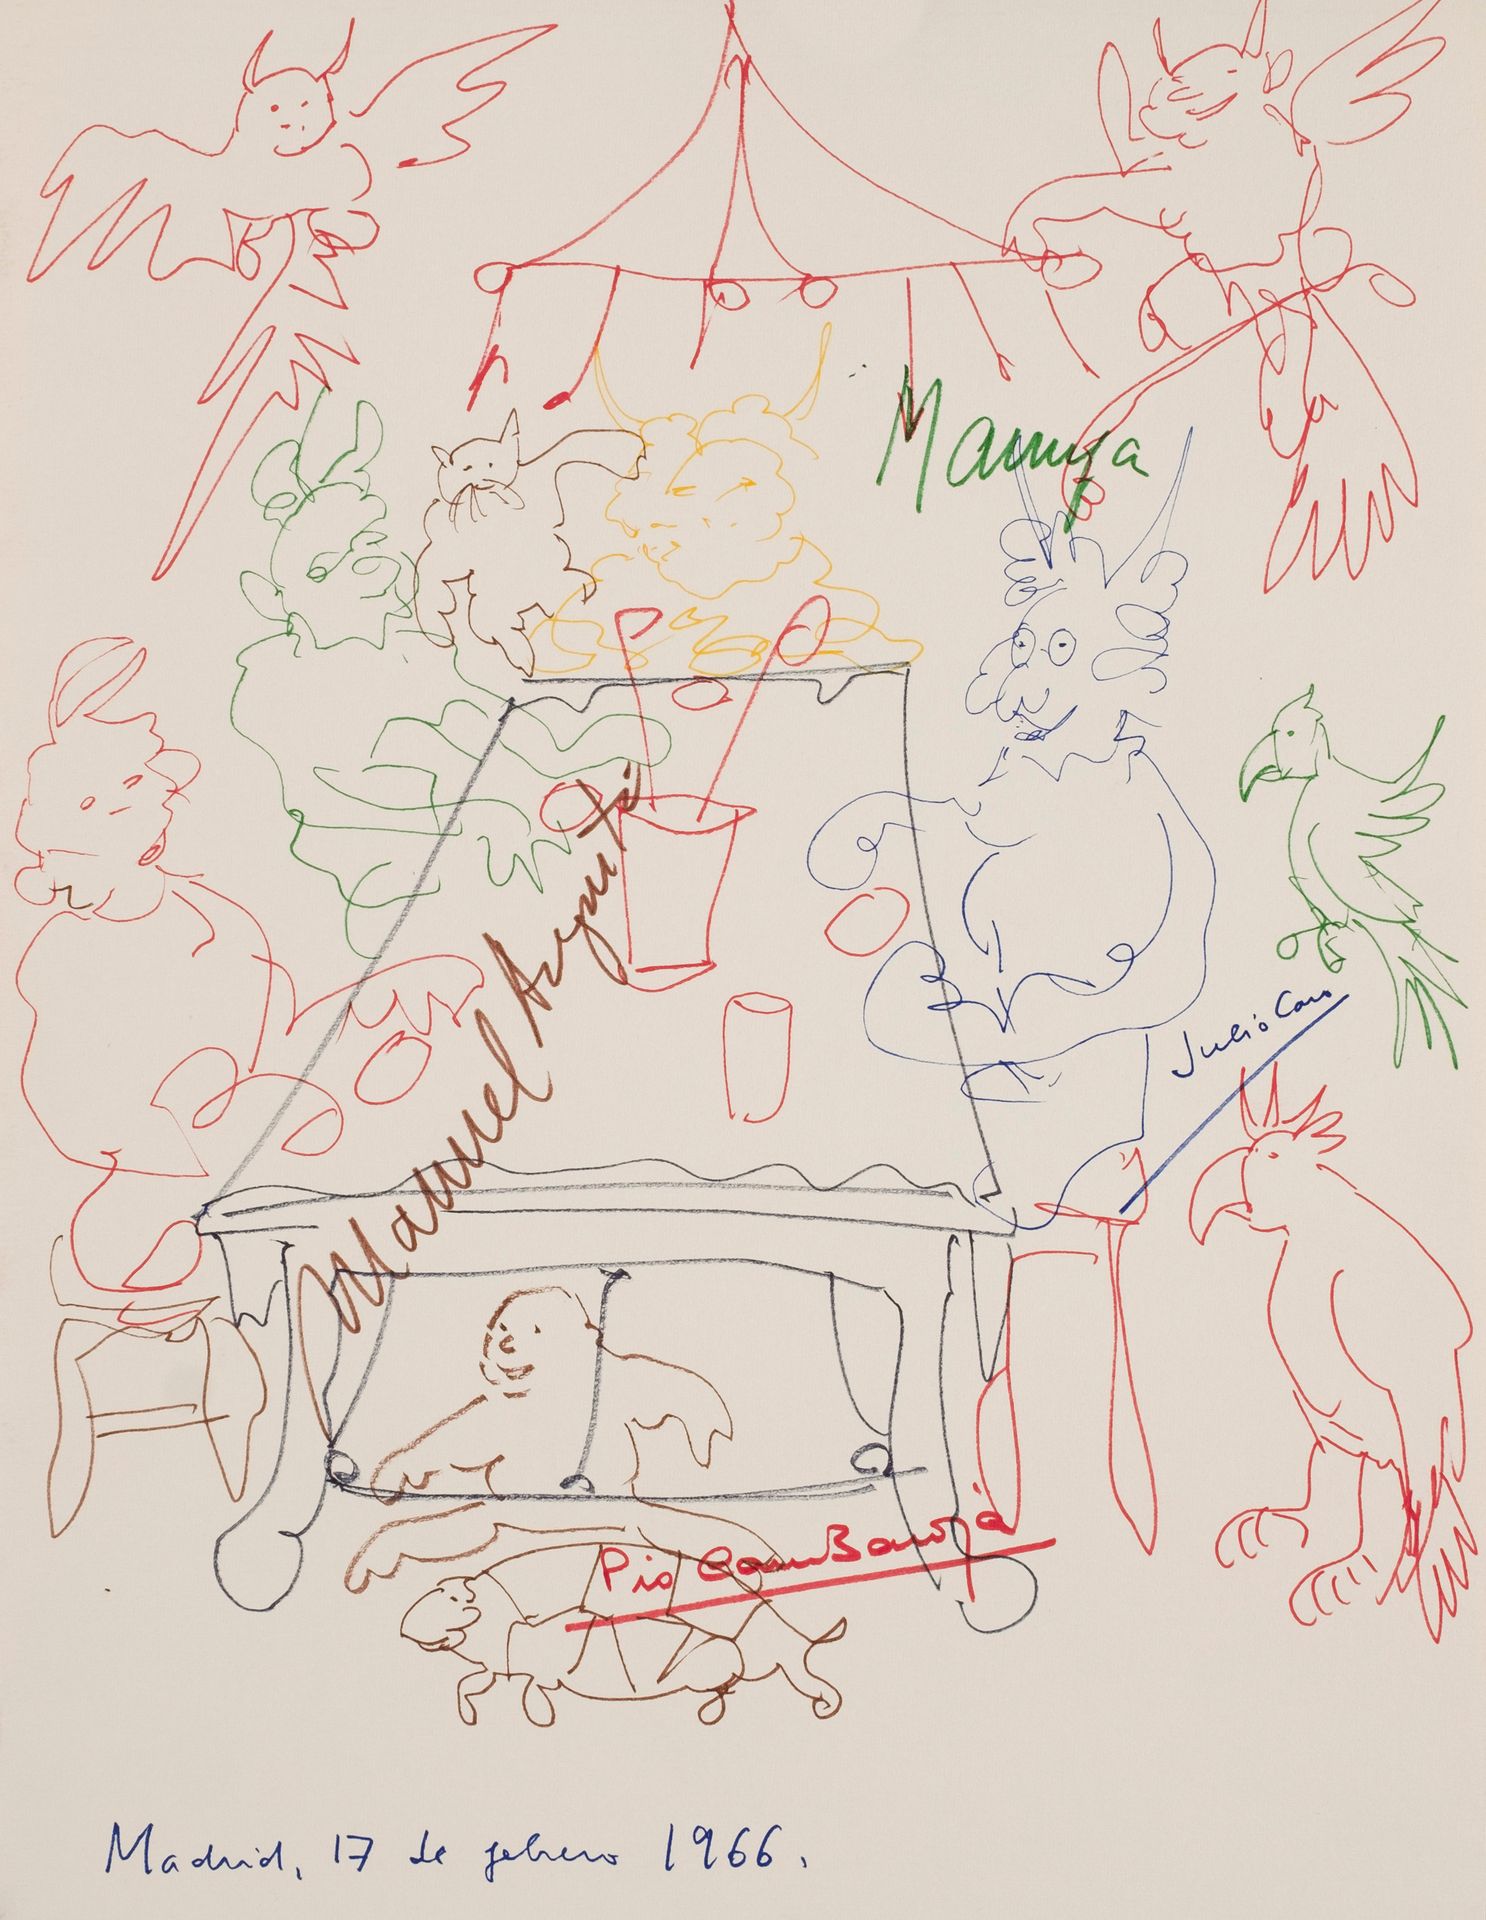 Null 画有人和动物的桌子，马戏团的帐篷，以及马鲁哈（？）、胡里奥-卡罗和皮奥-卡罗-巴罗哈的亲笔签名。日期为1966年2月17日，马德里。